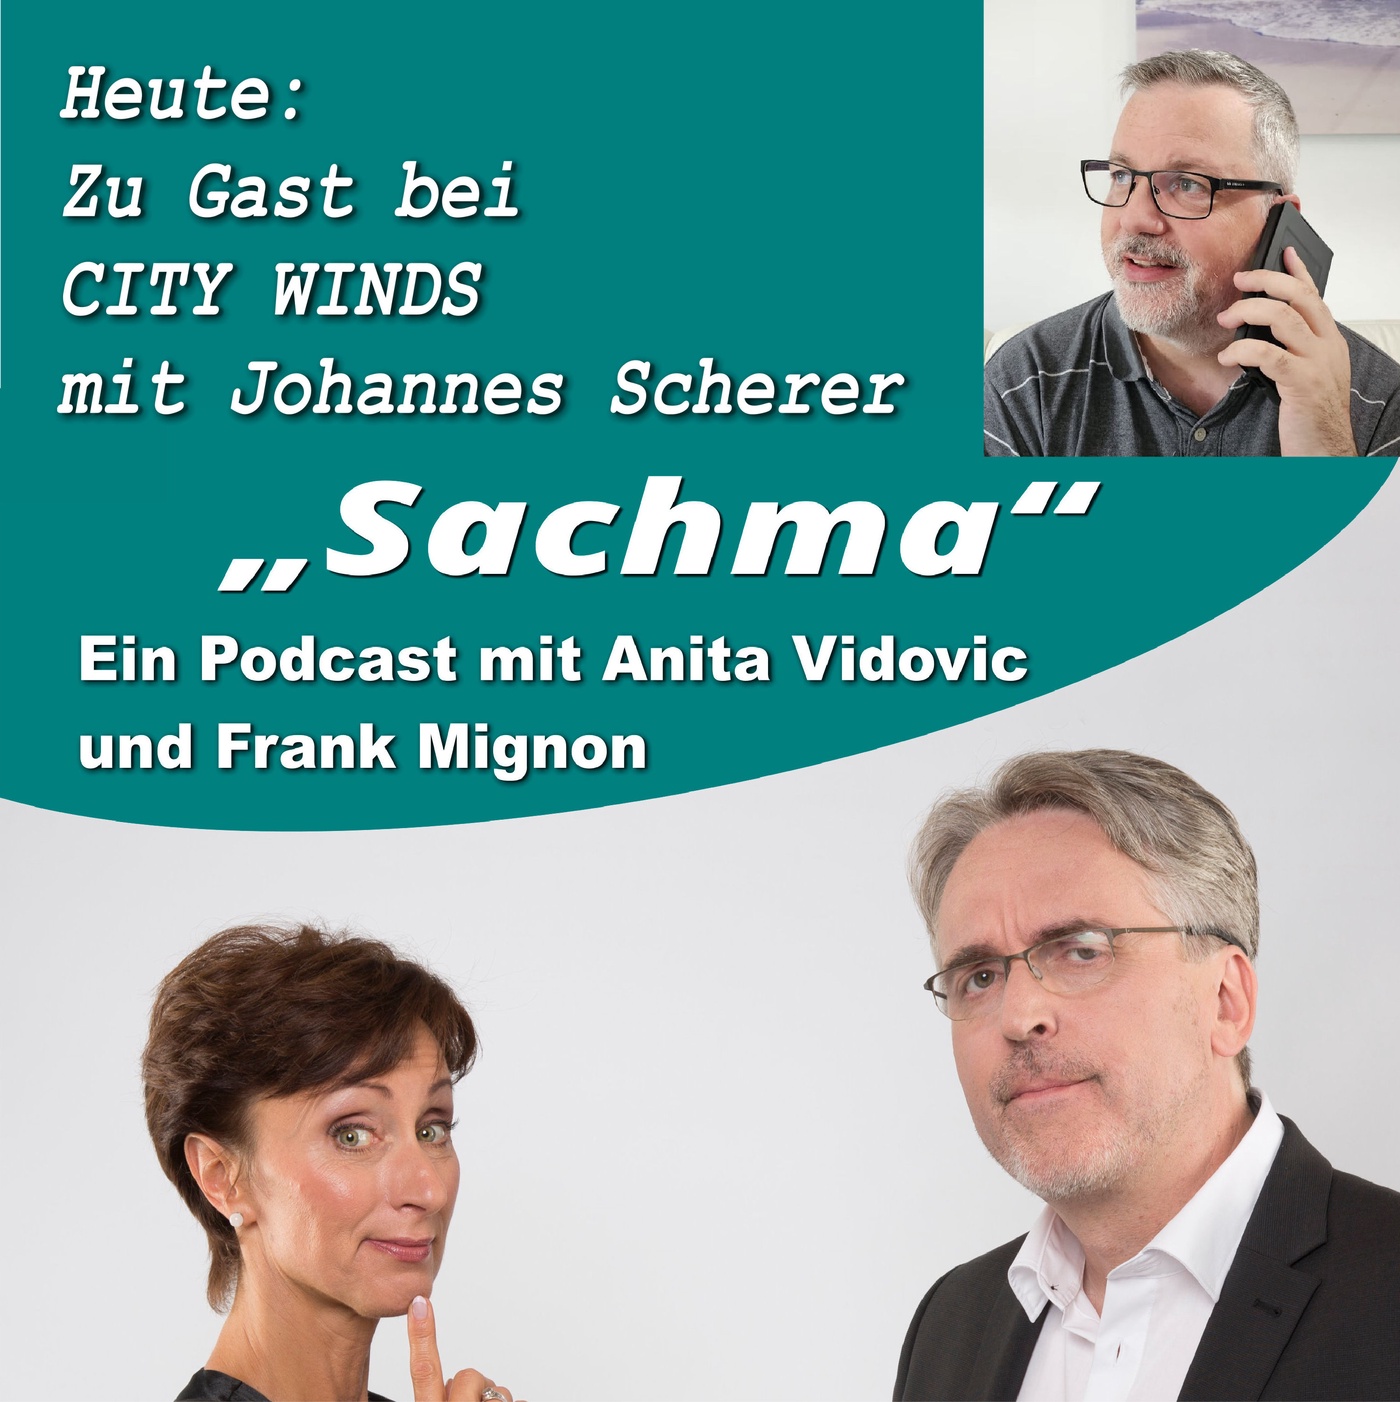 Sachma - Der Podcast - CITY WINDS und Johannes Scherer